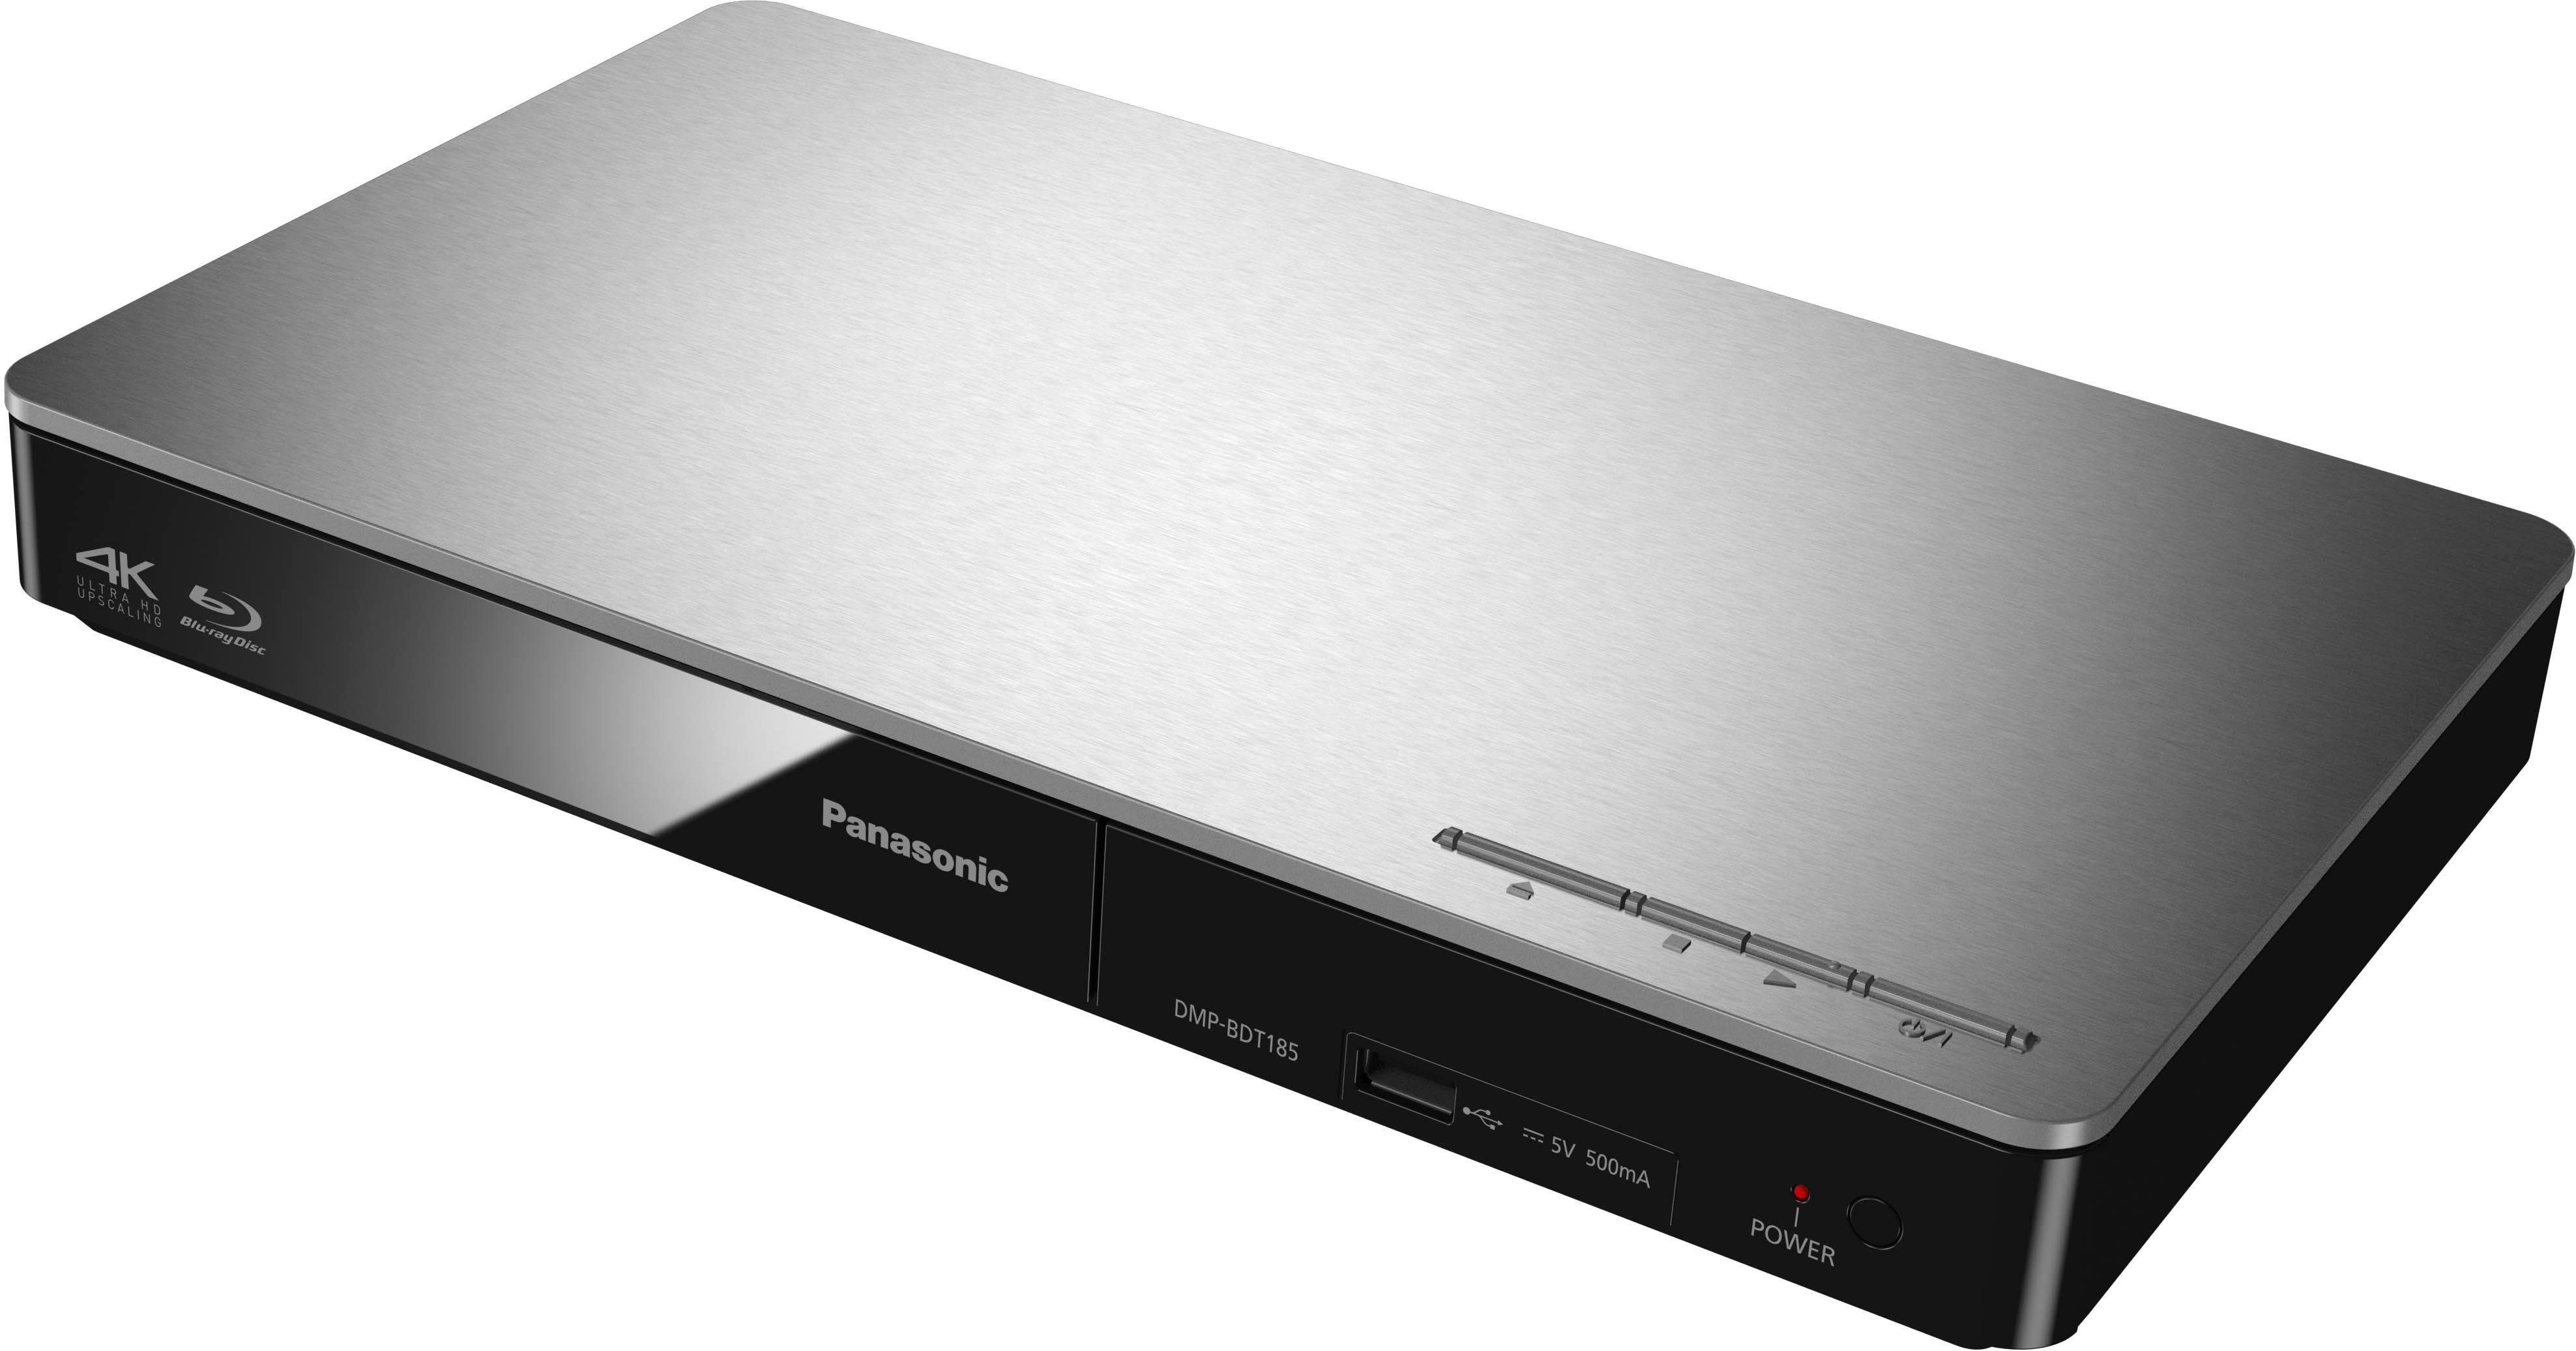 DMP-BDT184 / Schnellstart-Modus) Upscaling, 4K silberfarben Panasonic (Ethernet), DMP-BDT185 Blu-ray-Player (LAN